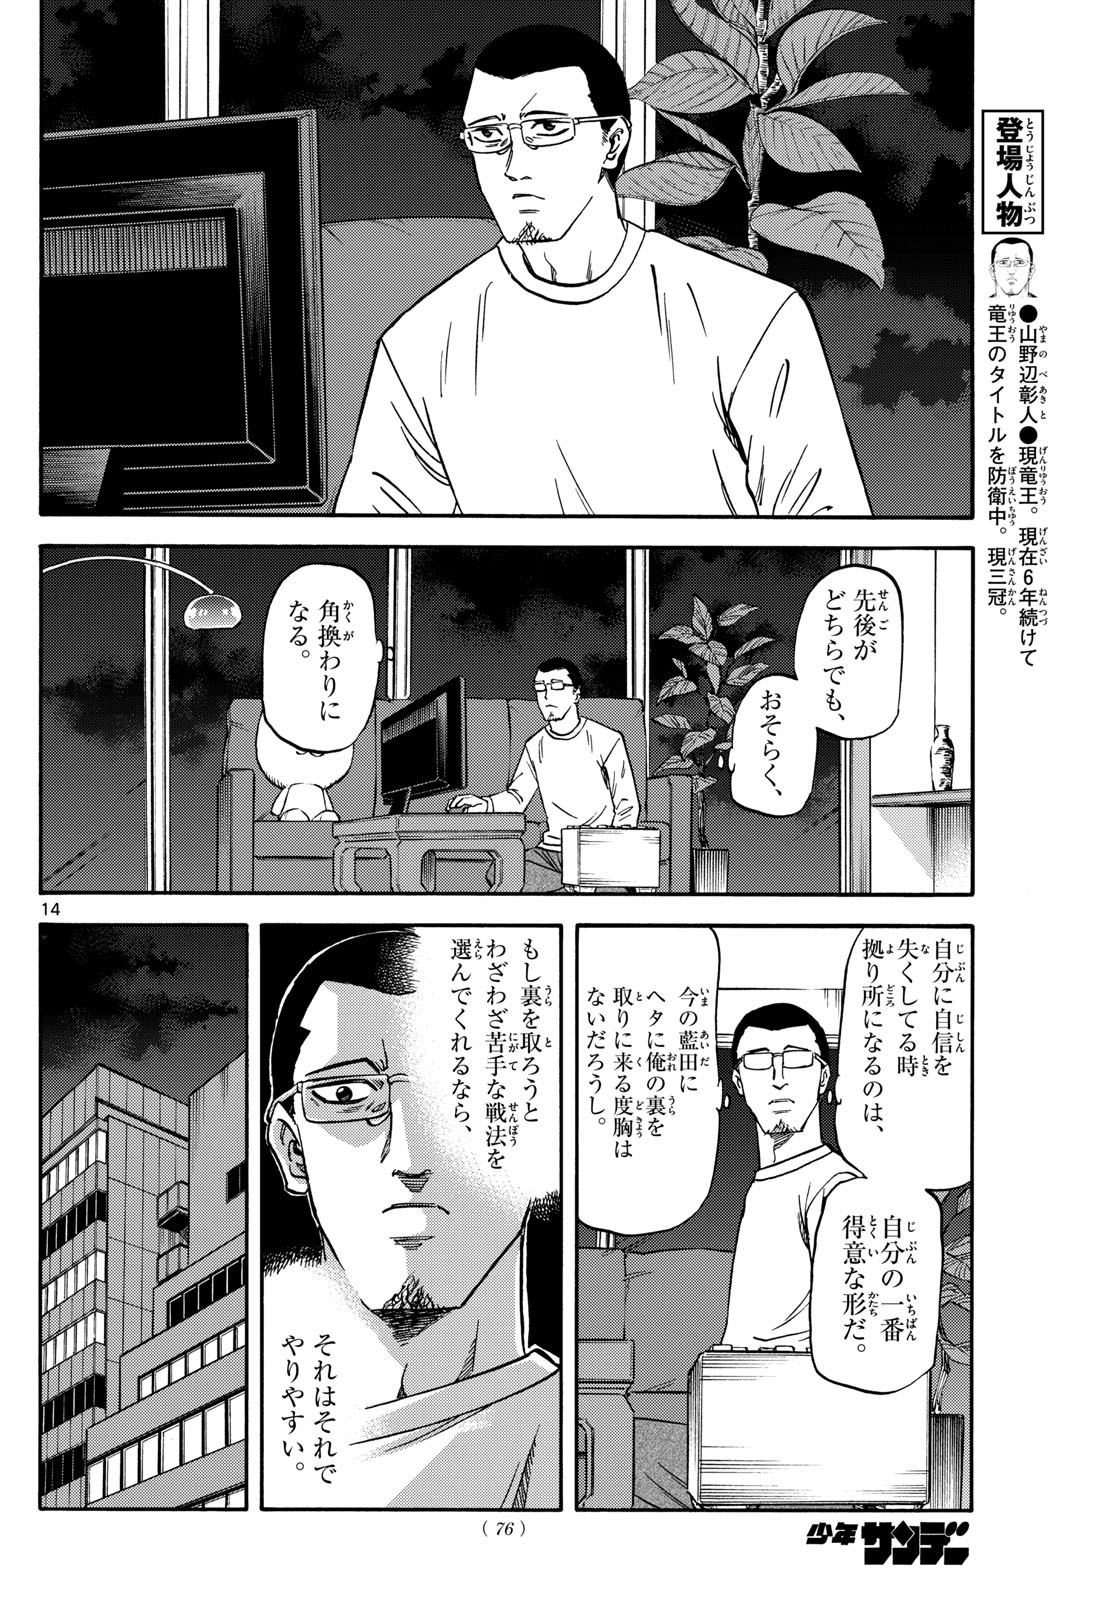 Tatsu to Ichigo - Chapter 171 - Page 14